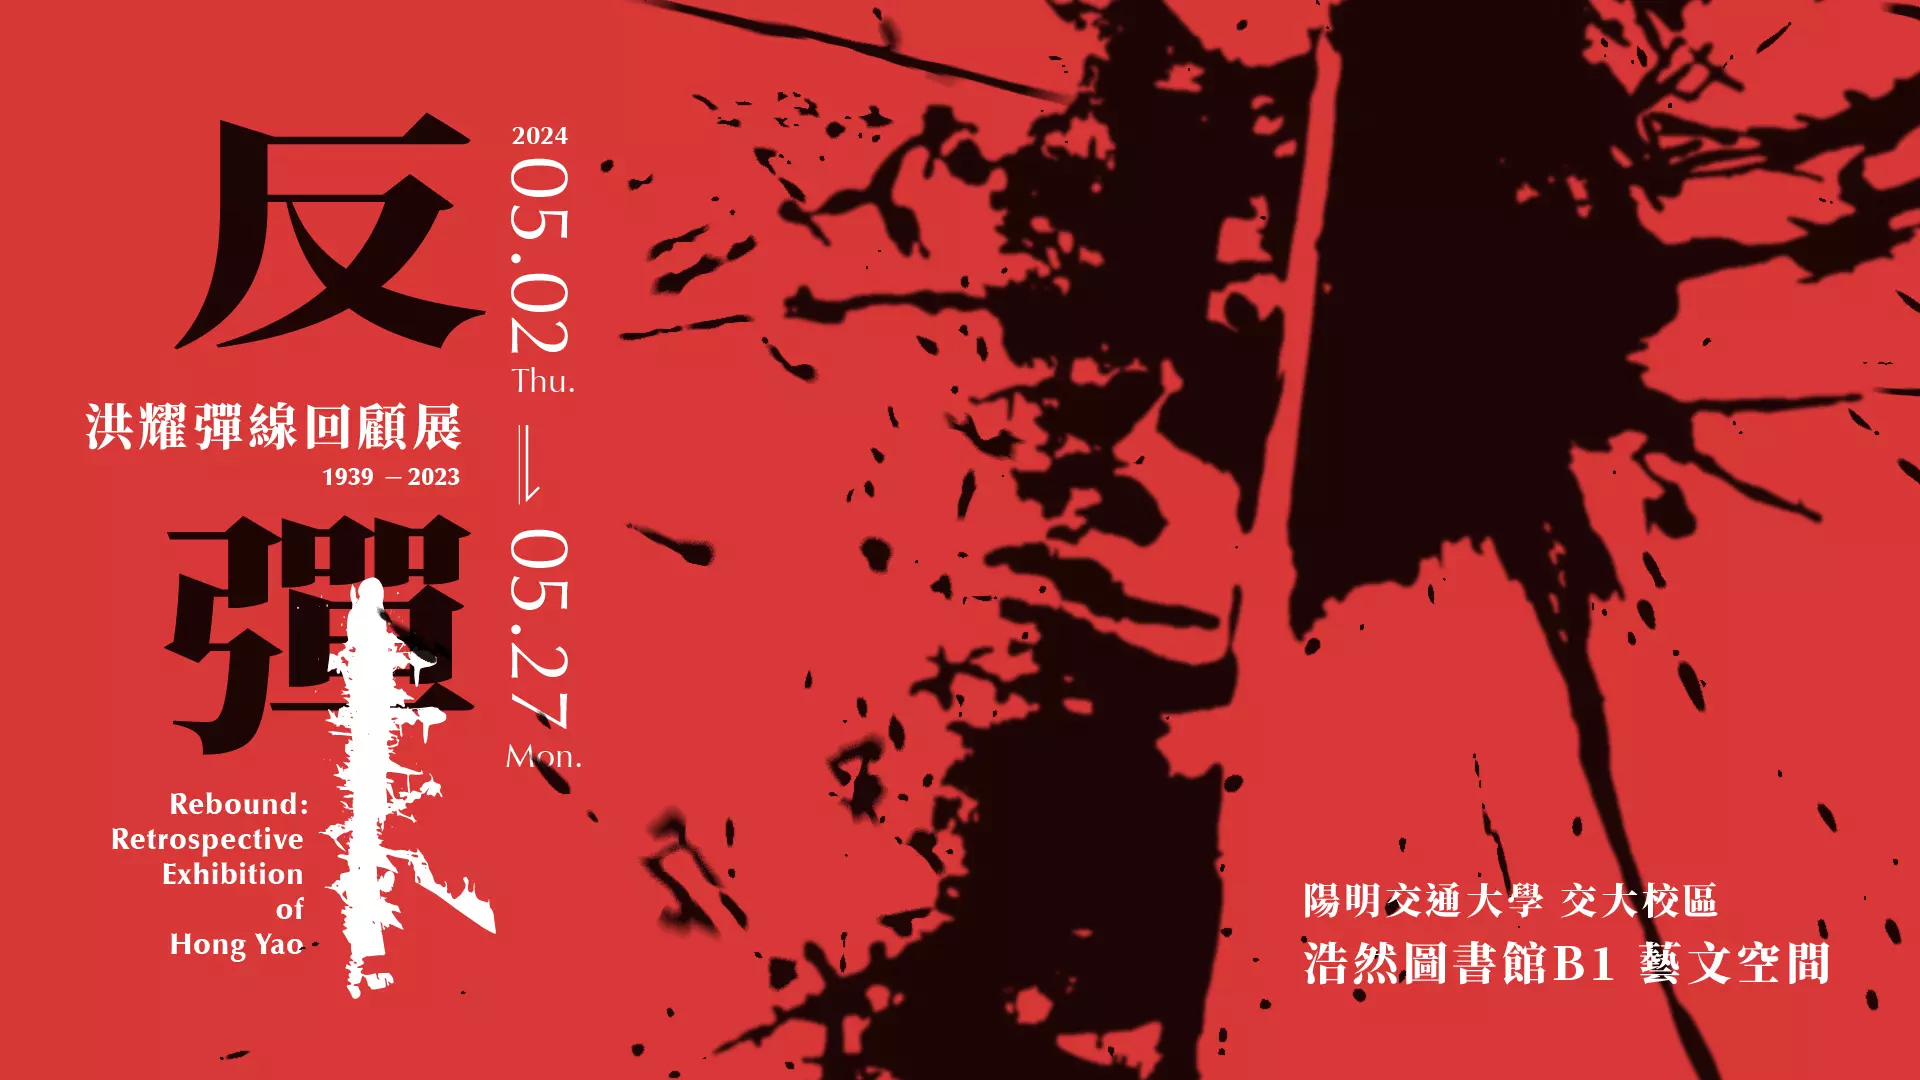 反彈：洪耀彈線回顧展 1939-2023  Retrospective Exhibition of Hong Yao